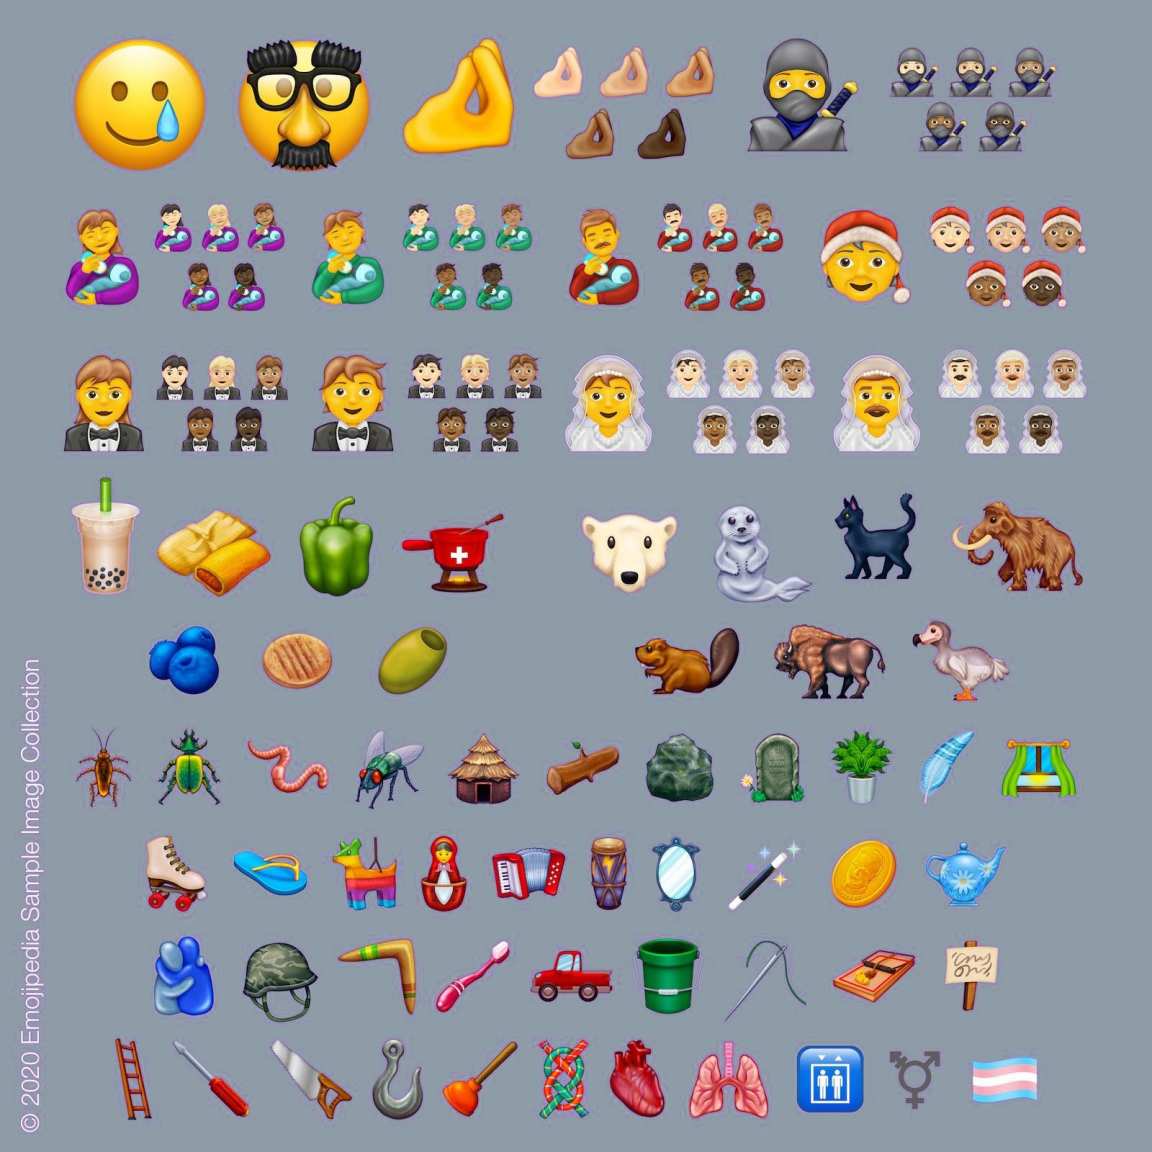     Detta är de nya emojierna som kommer till WhatsApp 2020 2020270279